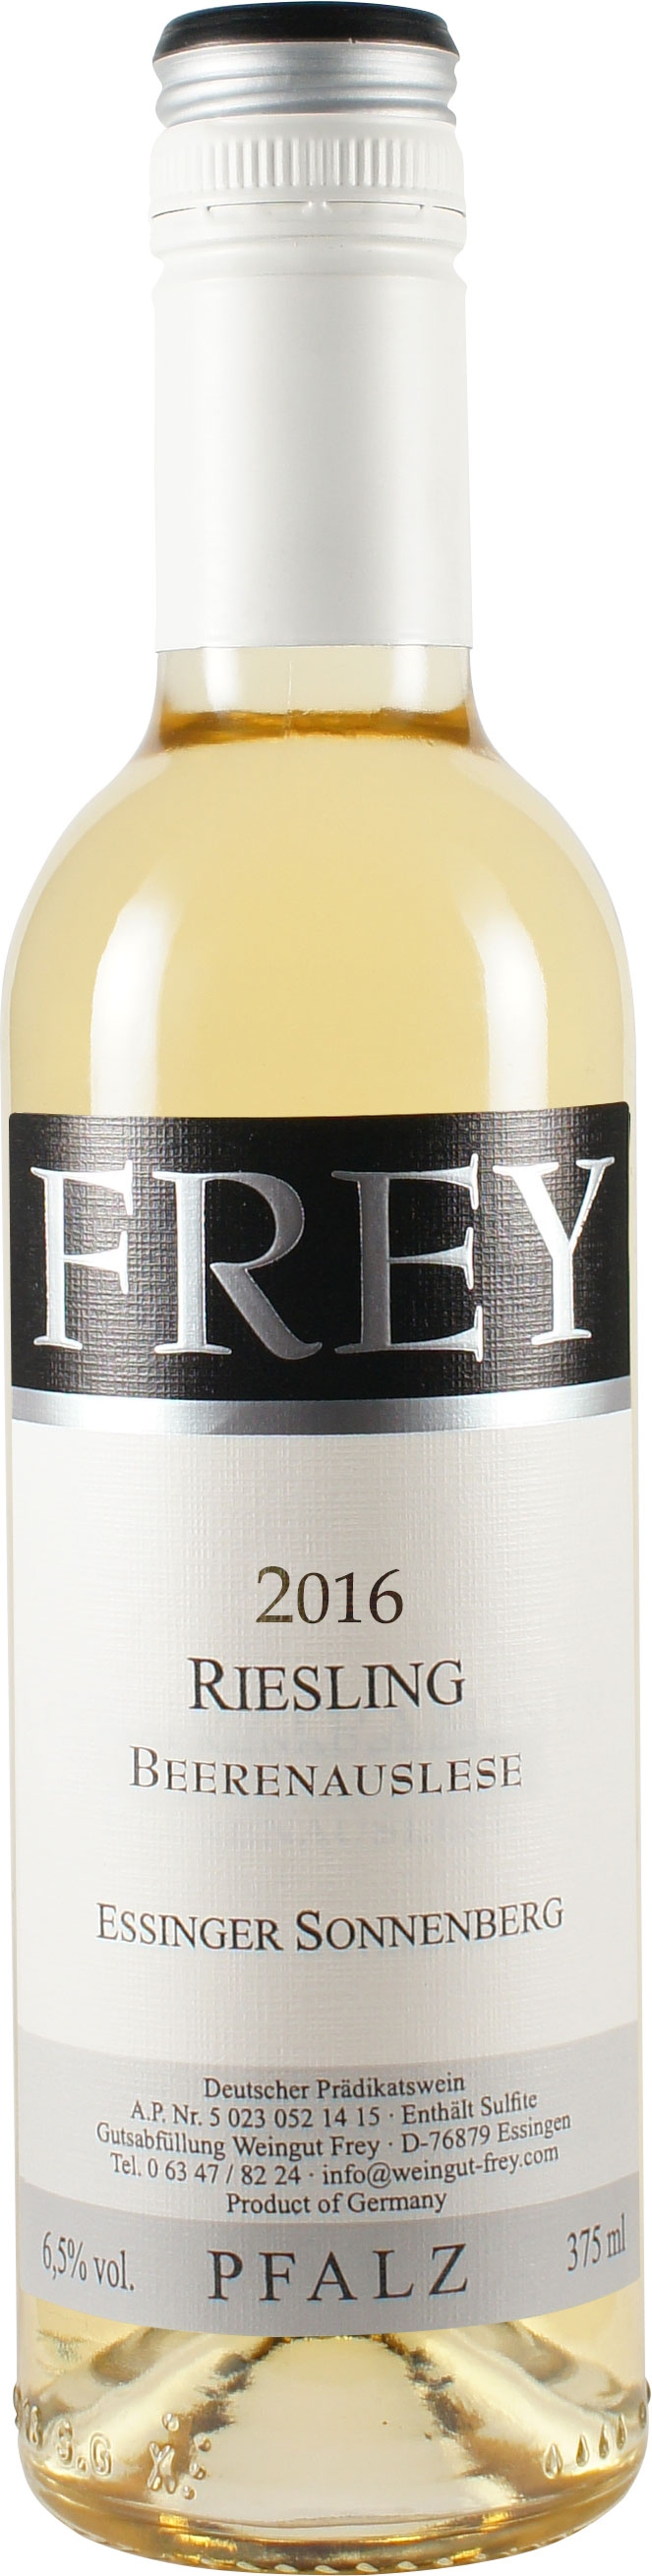 Frey 2016 Riesling Beerenauslese edelsüß 0,375 L